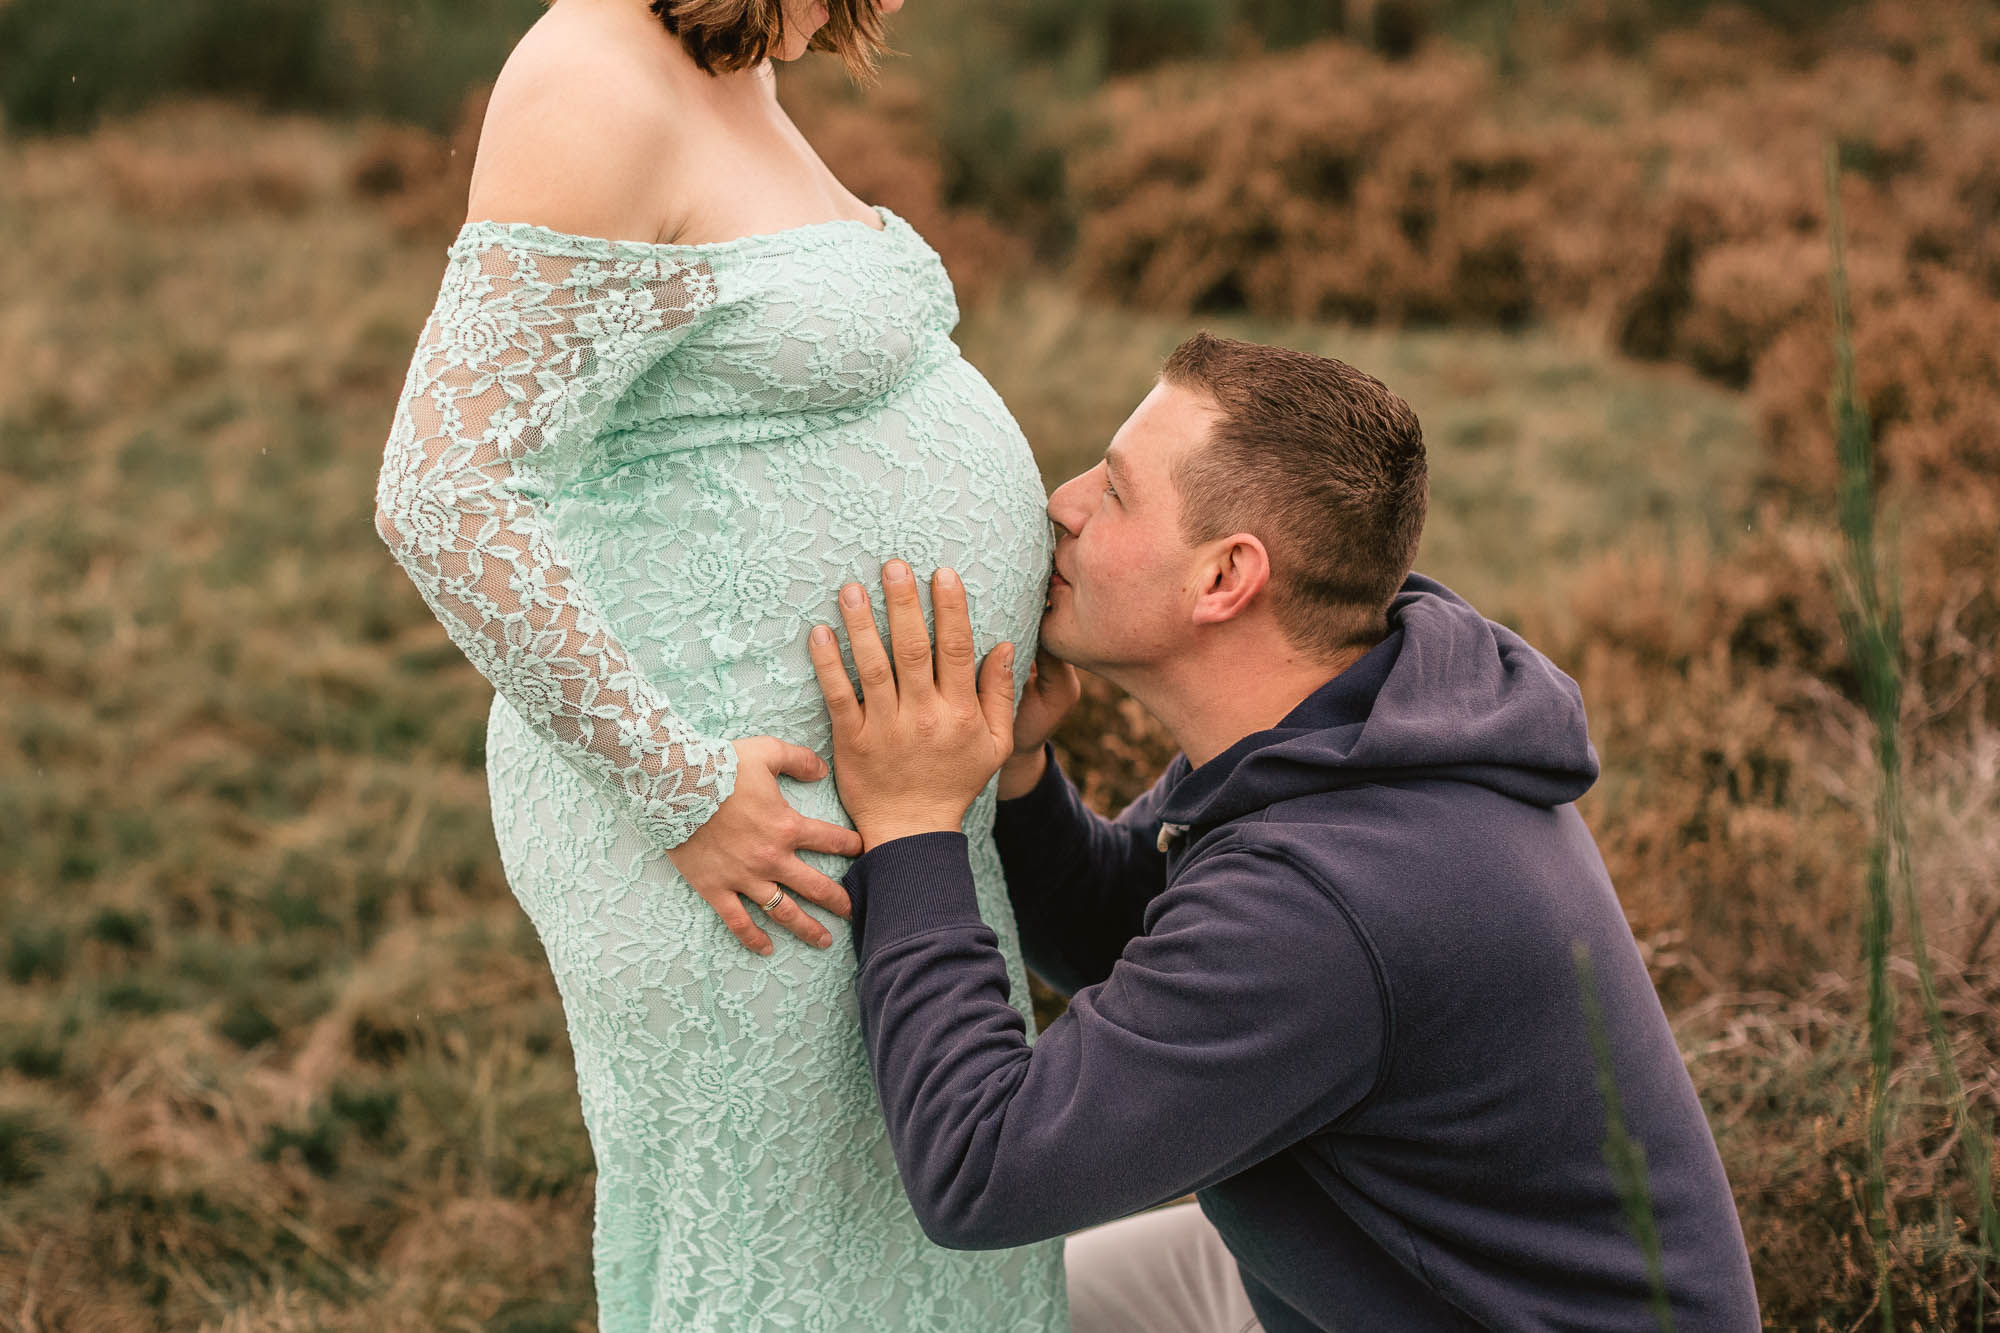 werdender Vater der den Babybauch seiner Frau hält und küsst vor ihr kniend während eines Schwangerschaftsshooting